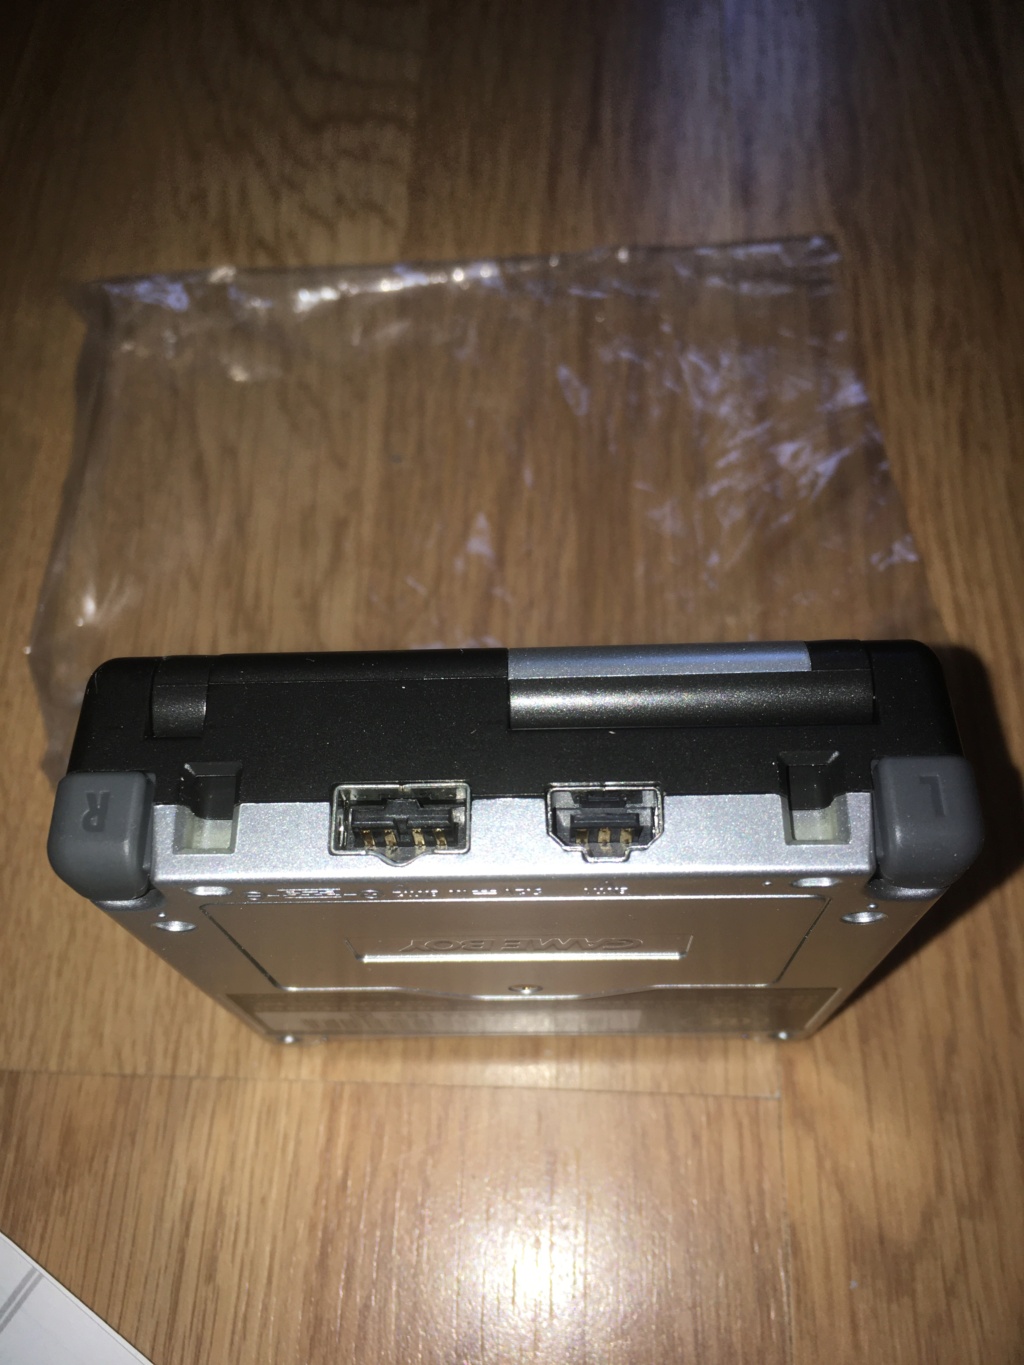 [VDS] Rarissime Game Boy Advance SP iQue Samus / Metroïd complète état neuf Img_6625